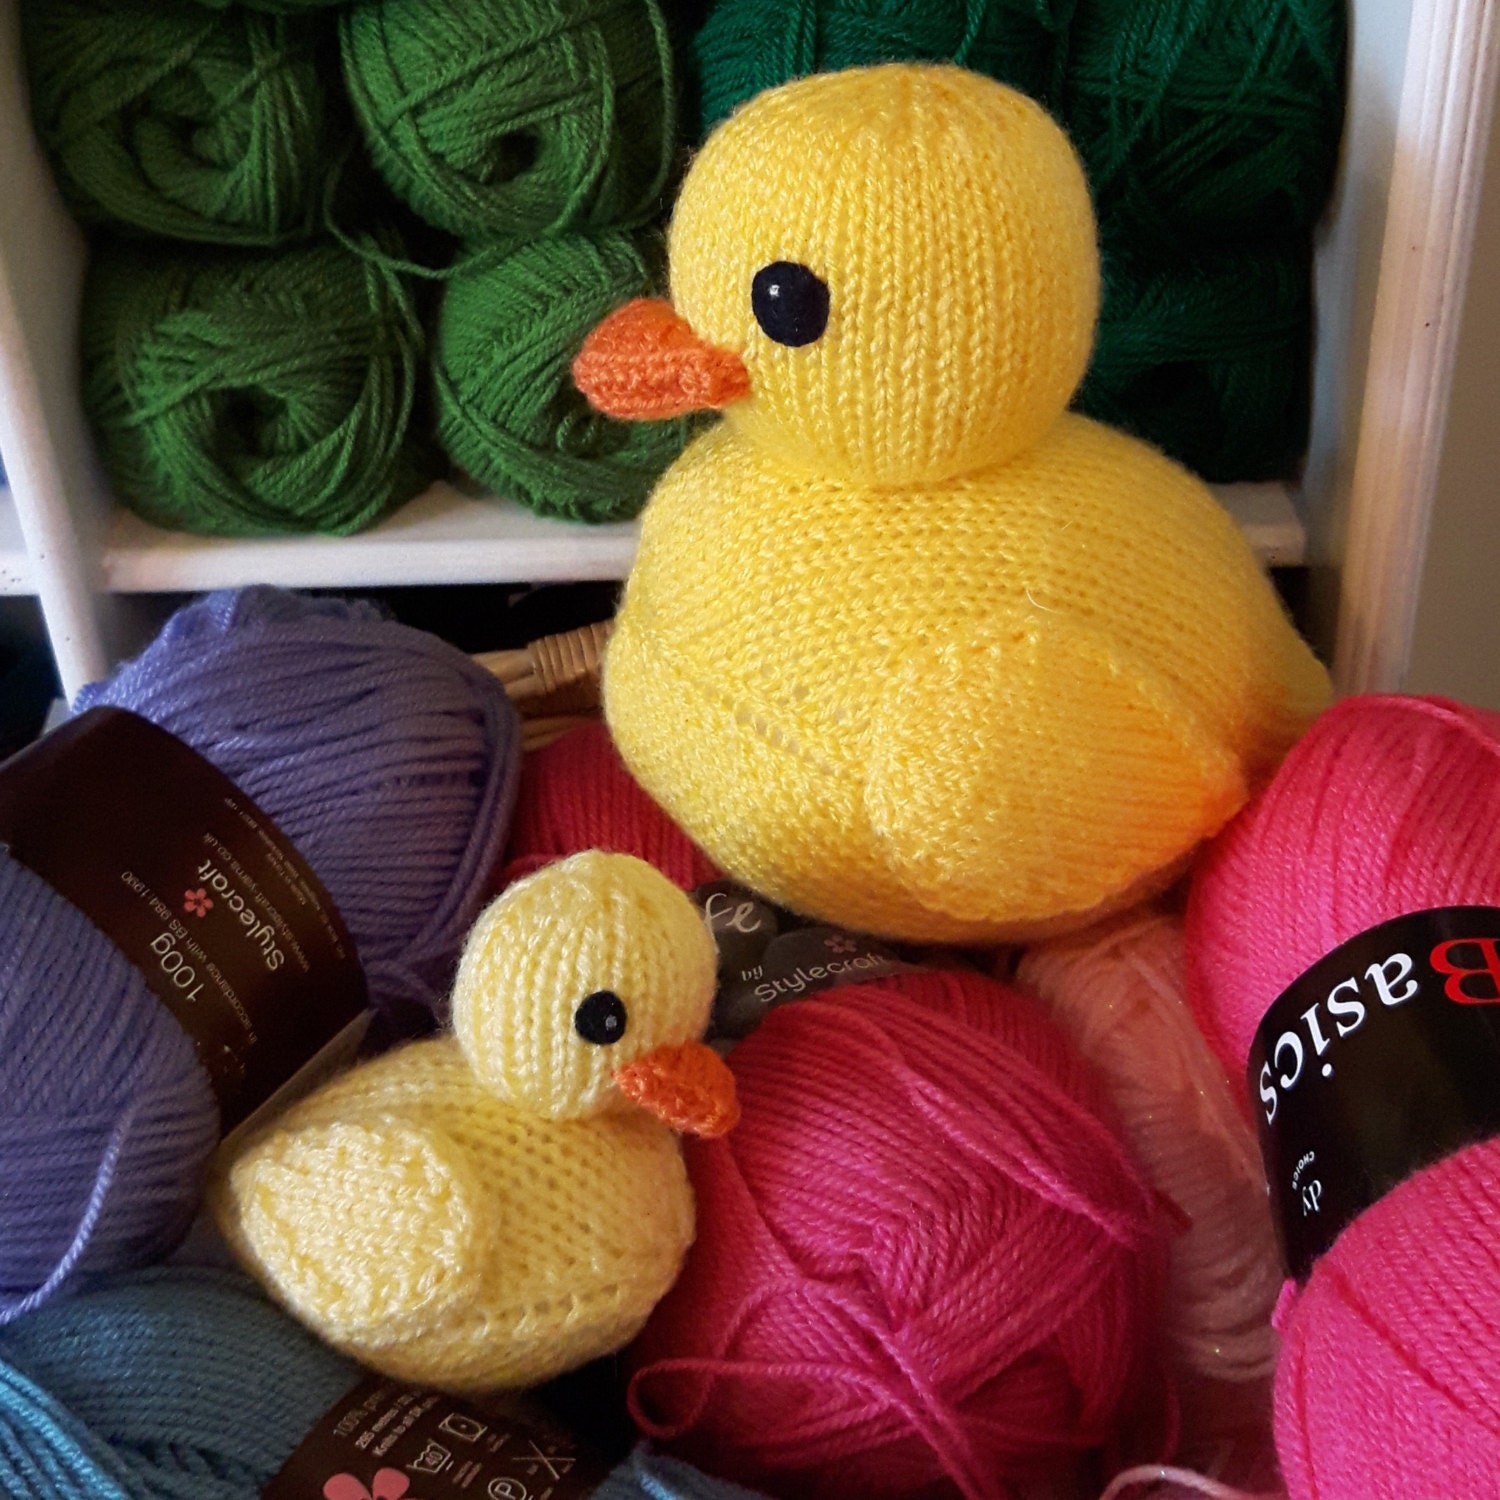 Rubber Ducks knitting pattern PDF cute rubber duckies